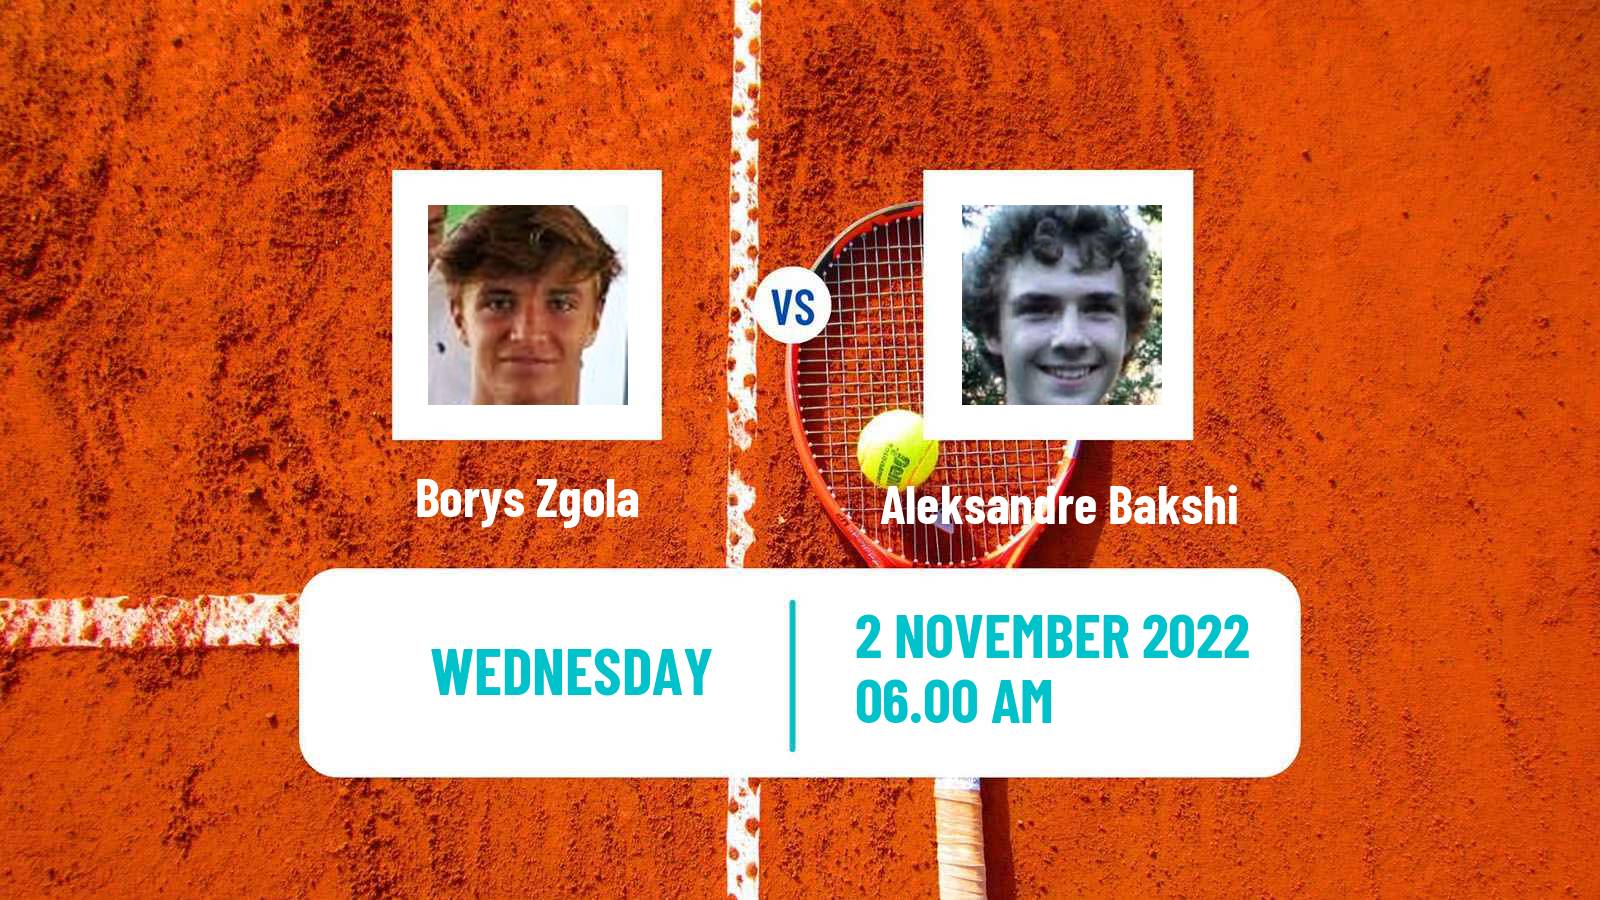 Tennis ITF Tournaments Borys Zgola - Aleksandre Bakshi